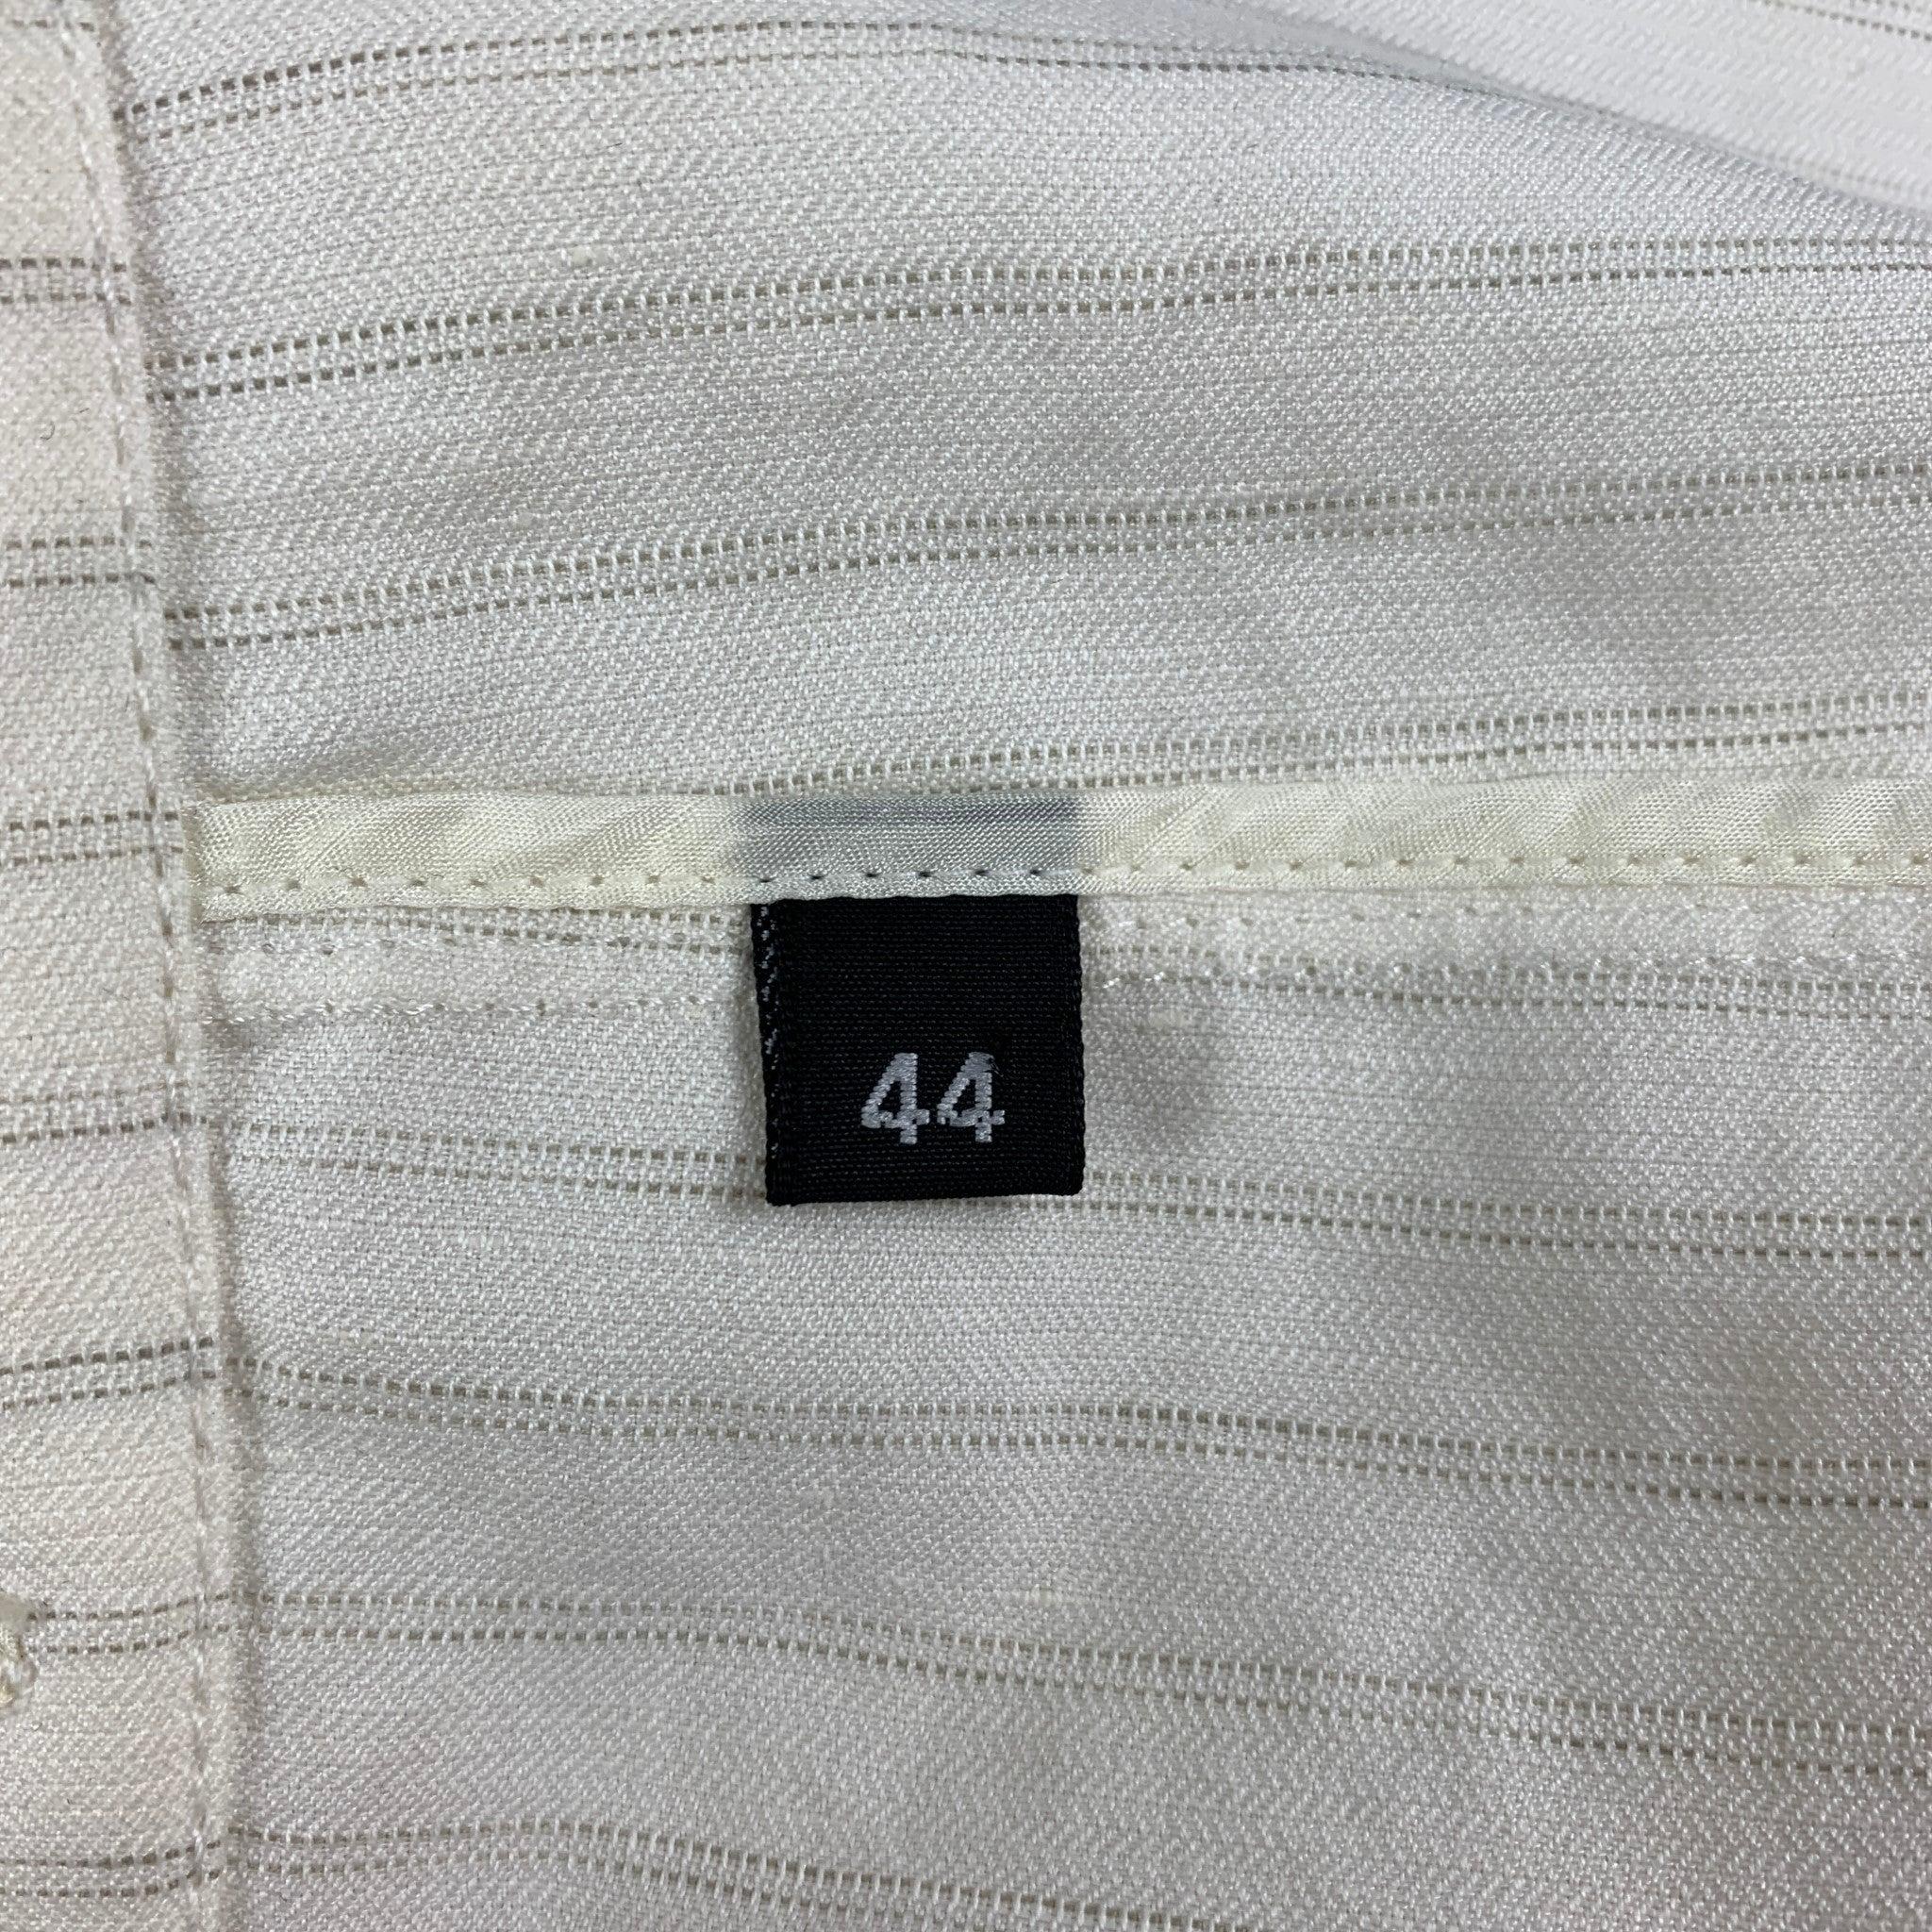 ARMANI COLLEZIONI Size 44 Regular Off White Stripe Notch Lapel Sport Coat For Sale 1